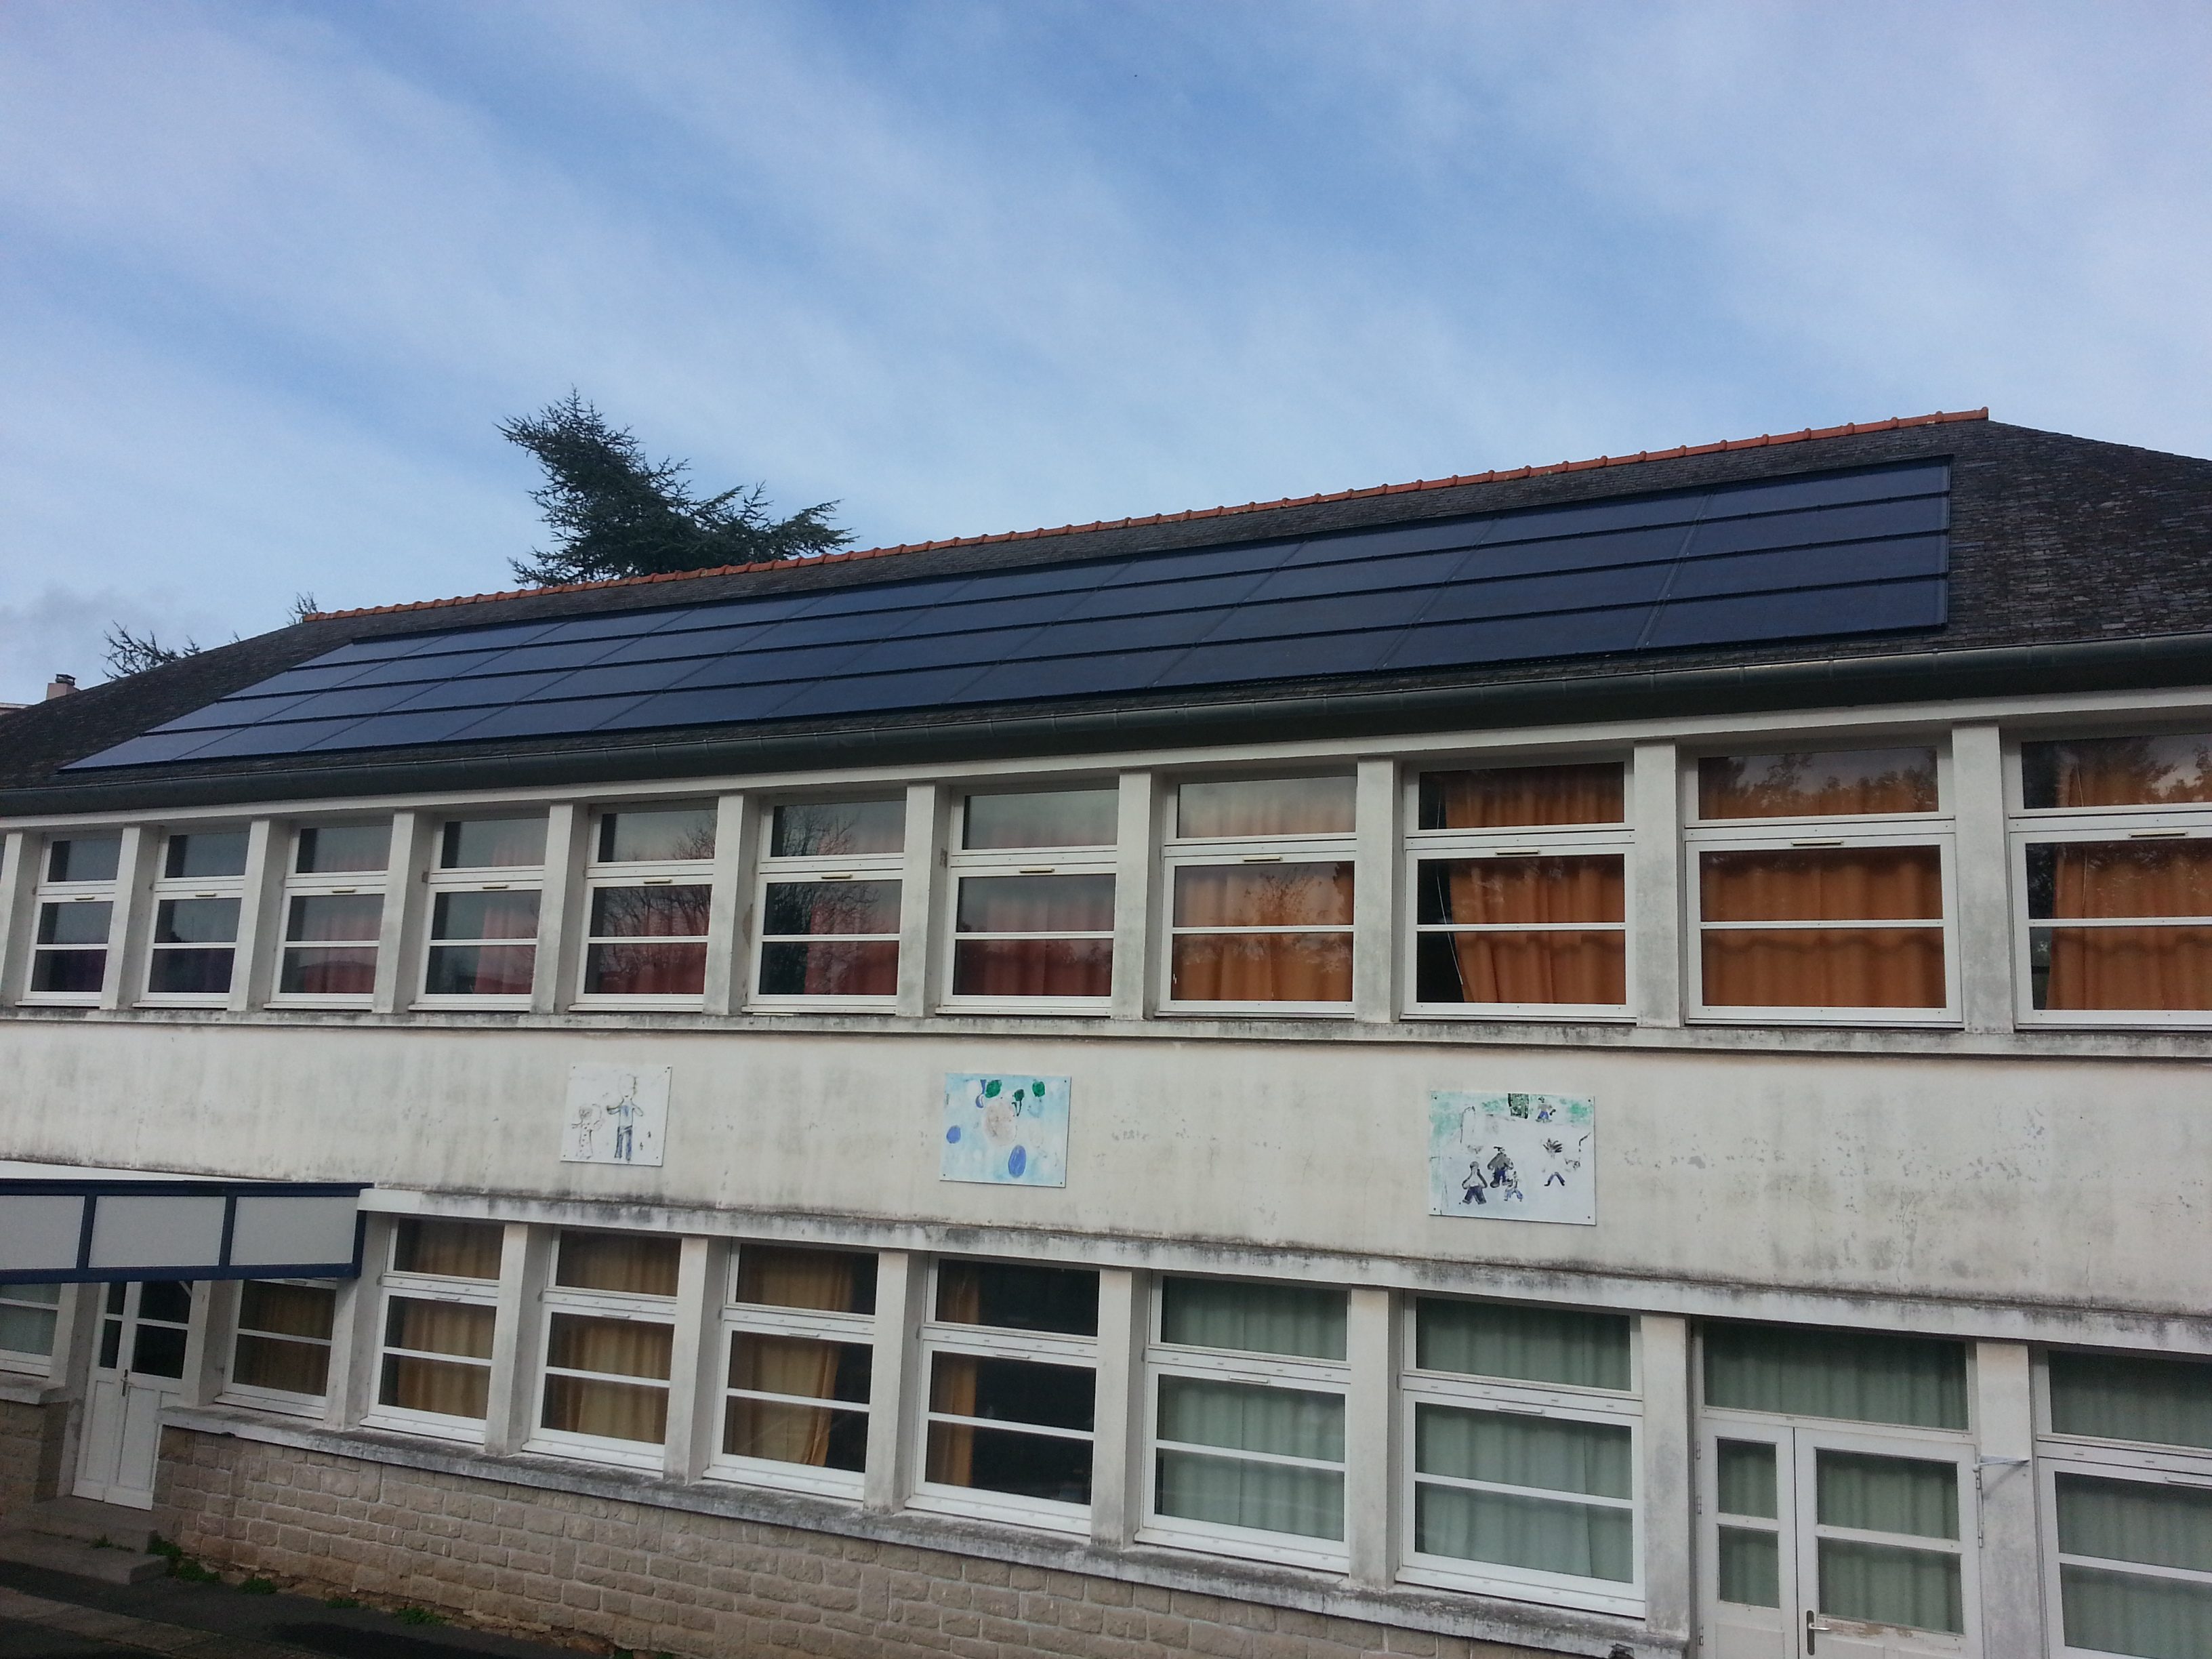 Ecole Stang ar choat - Equipement des écoles de la ville de quimper d'installation solaire